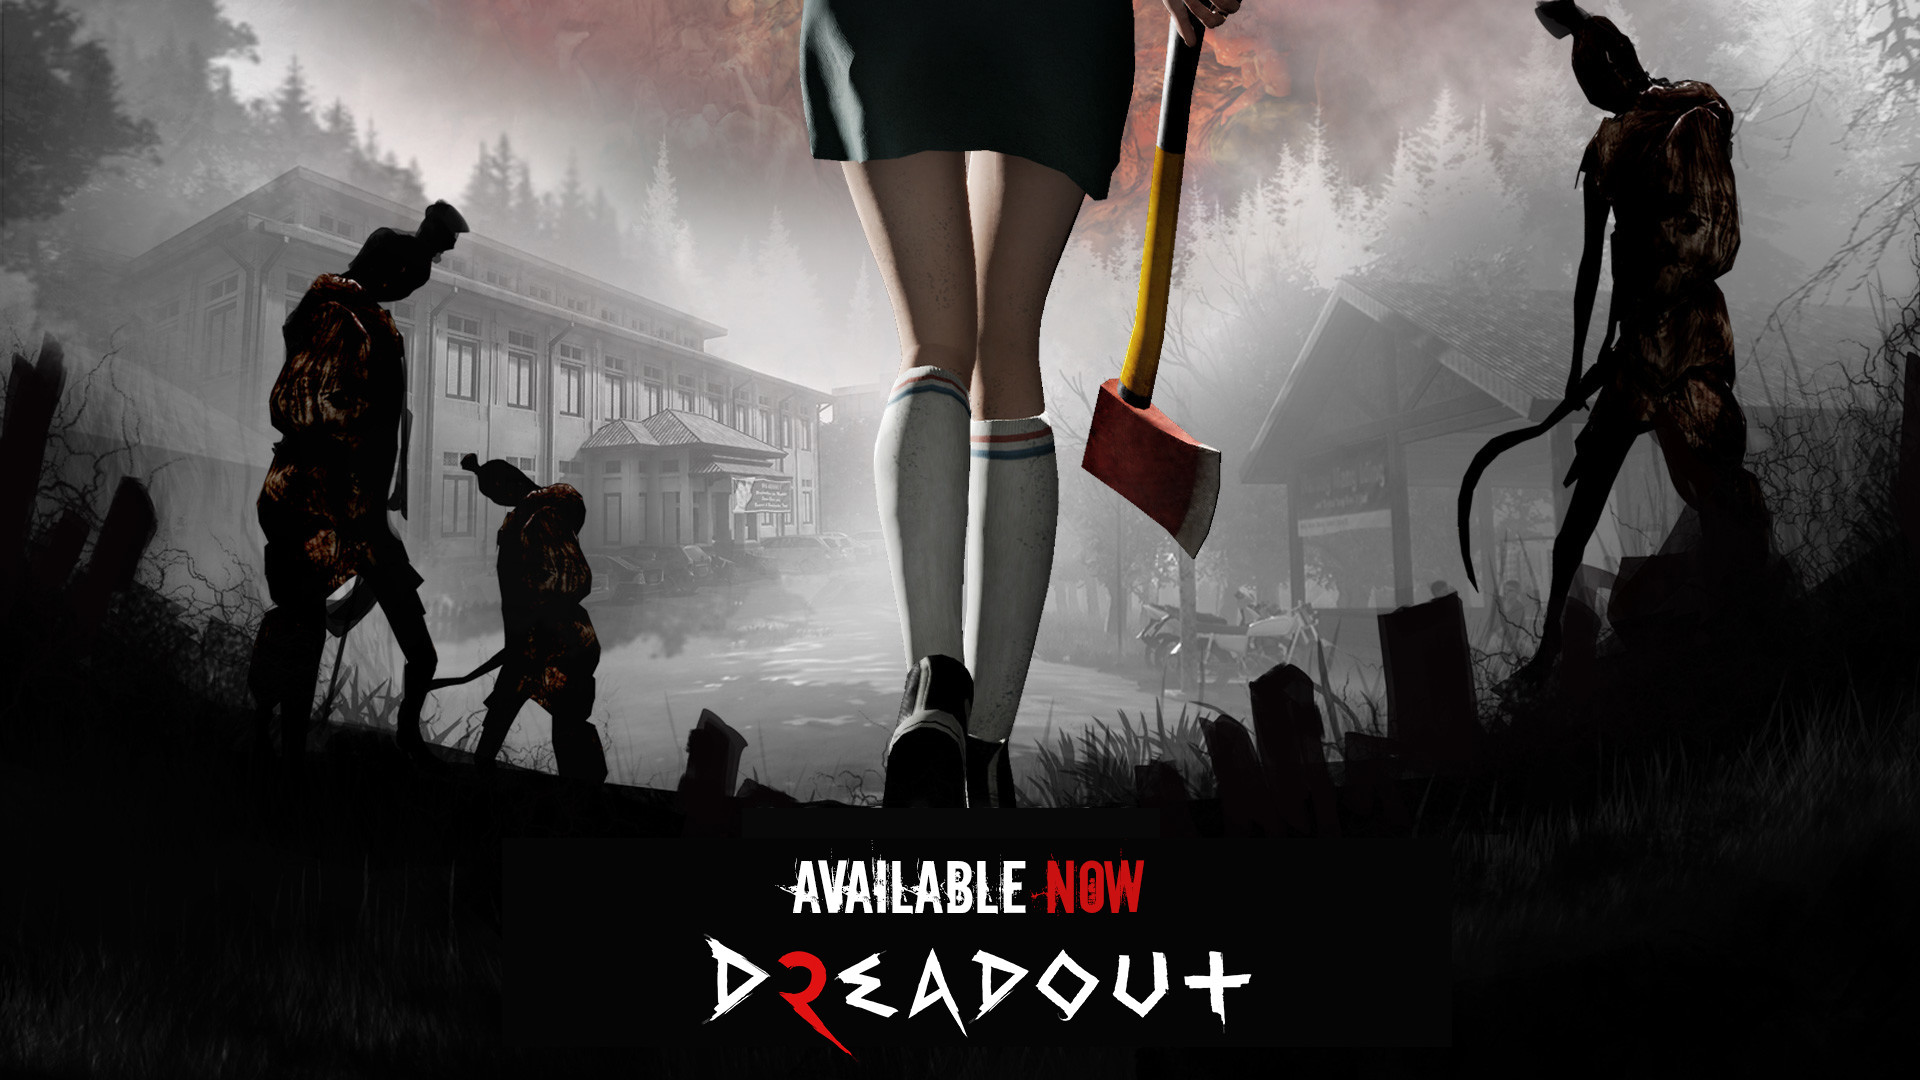 《小镇惊魂1/DreadOut 1》v2.2.11_20201119版|整合DLC|容量8.7GB|官中|支持键鼠.手柄-BUG软件 • BUG软件